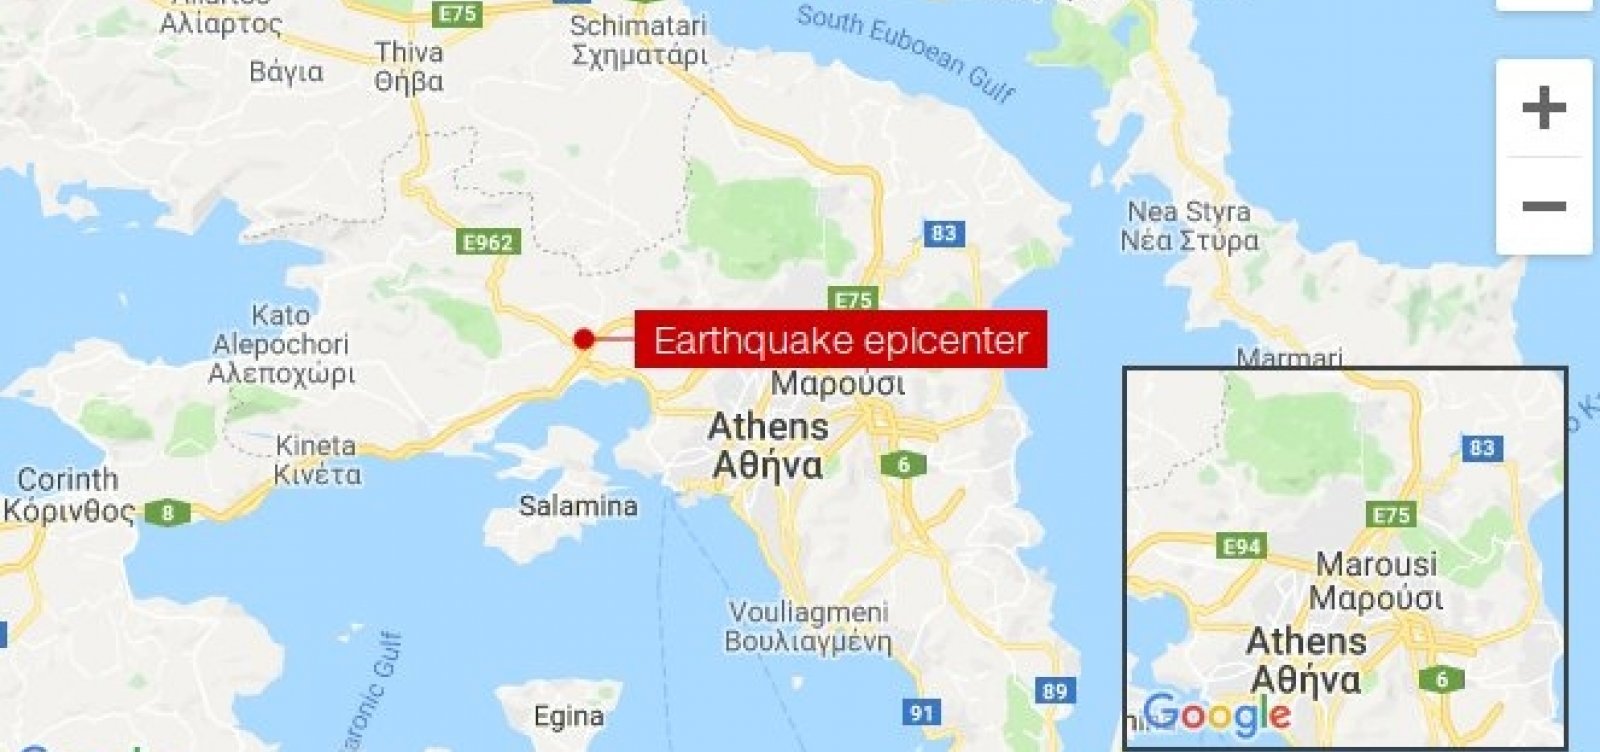 Atenas é atingida por um terremoto de magnitude 5.1